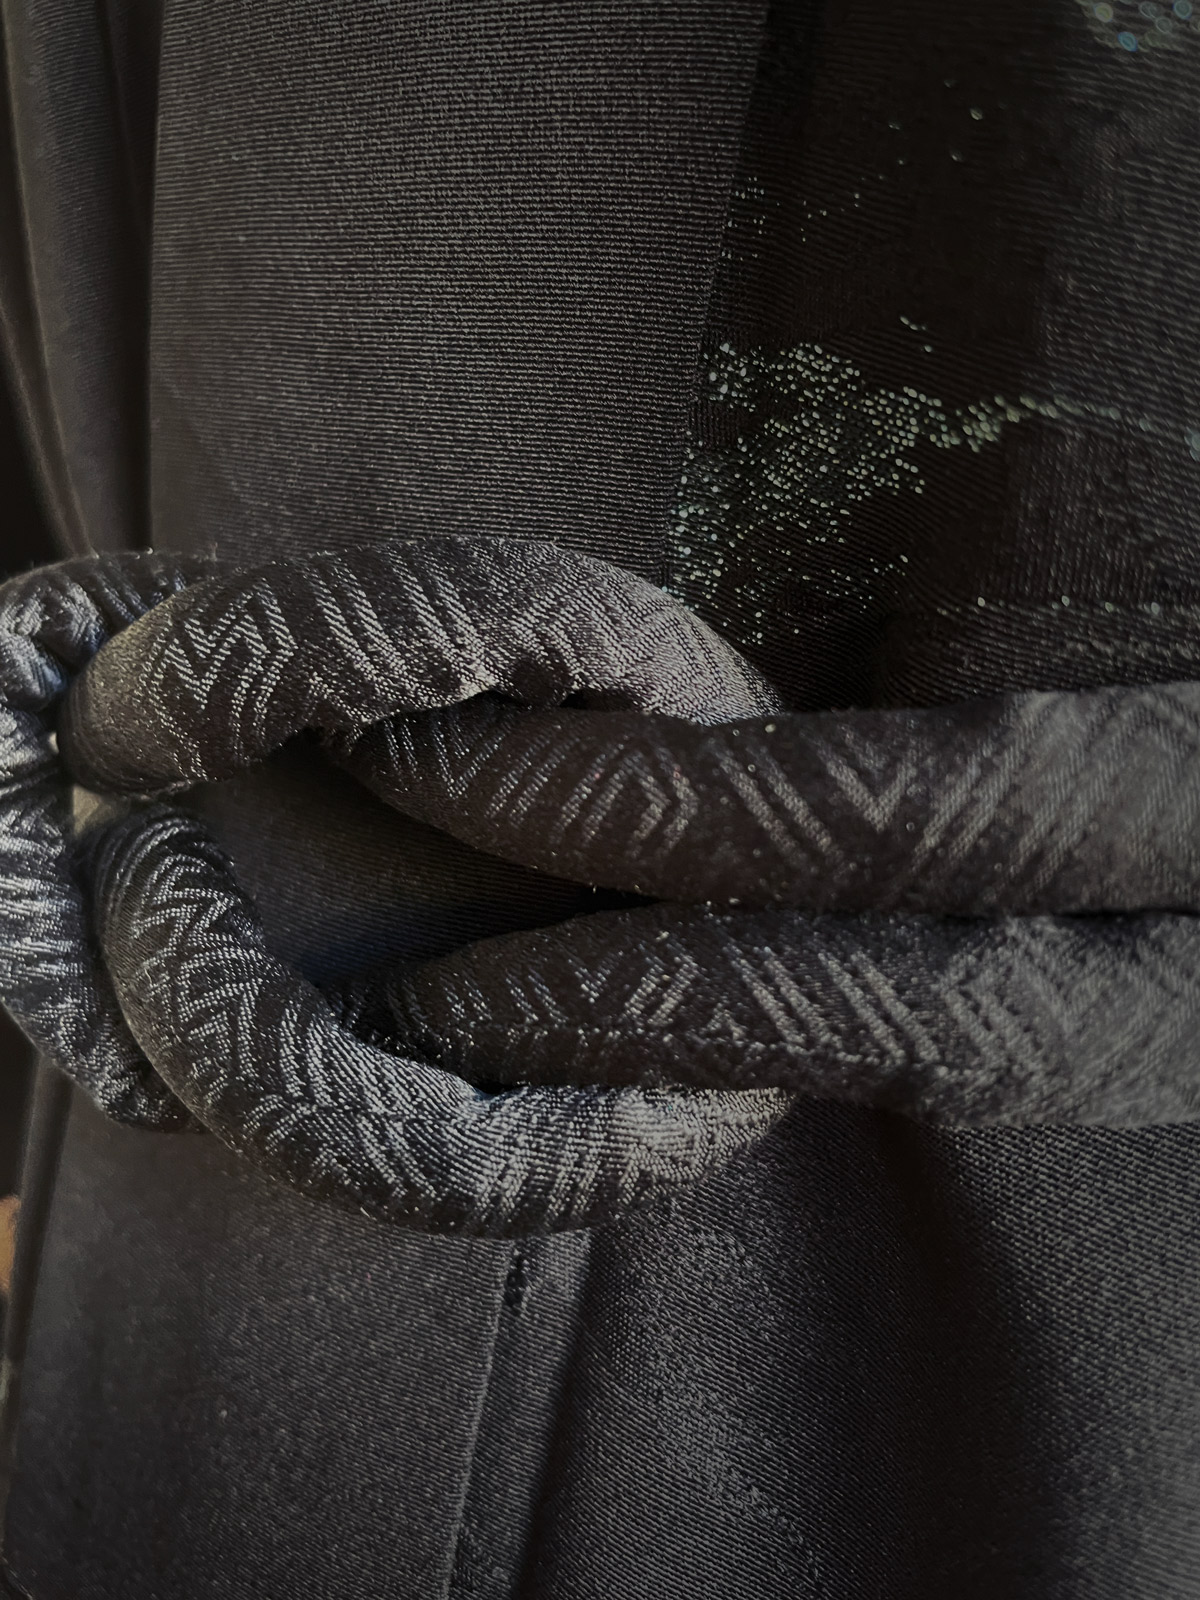 Rounded cord (Obijime) in black silk